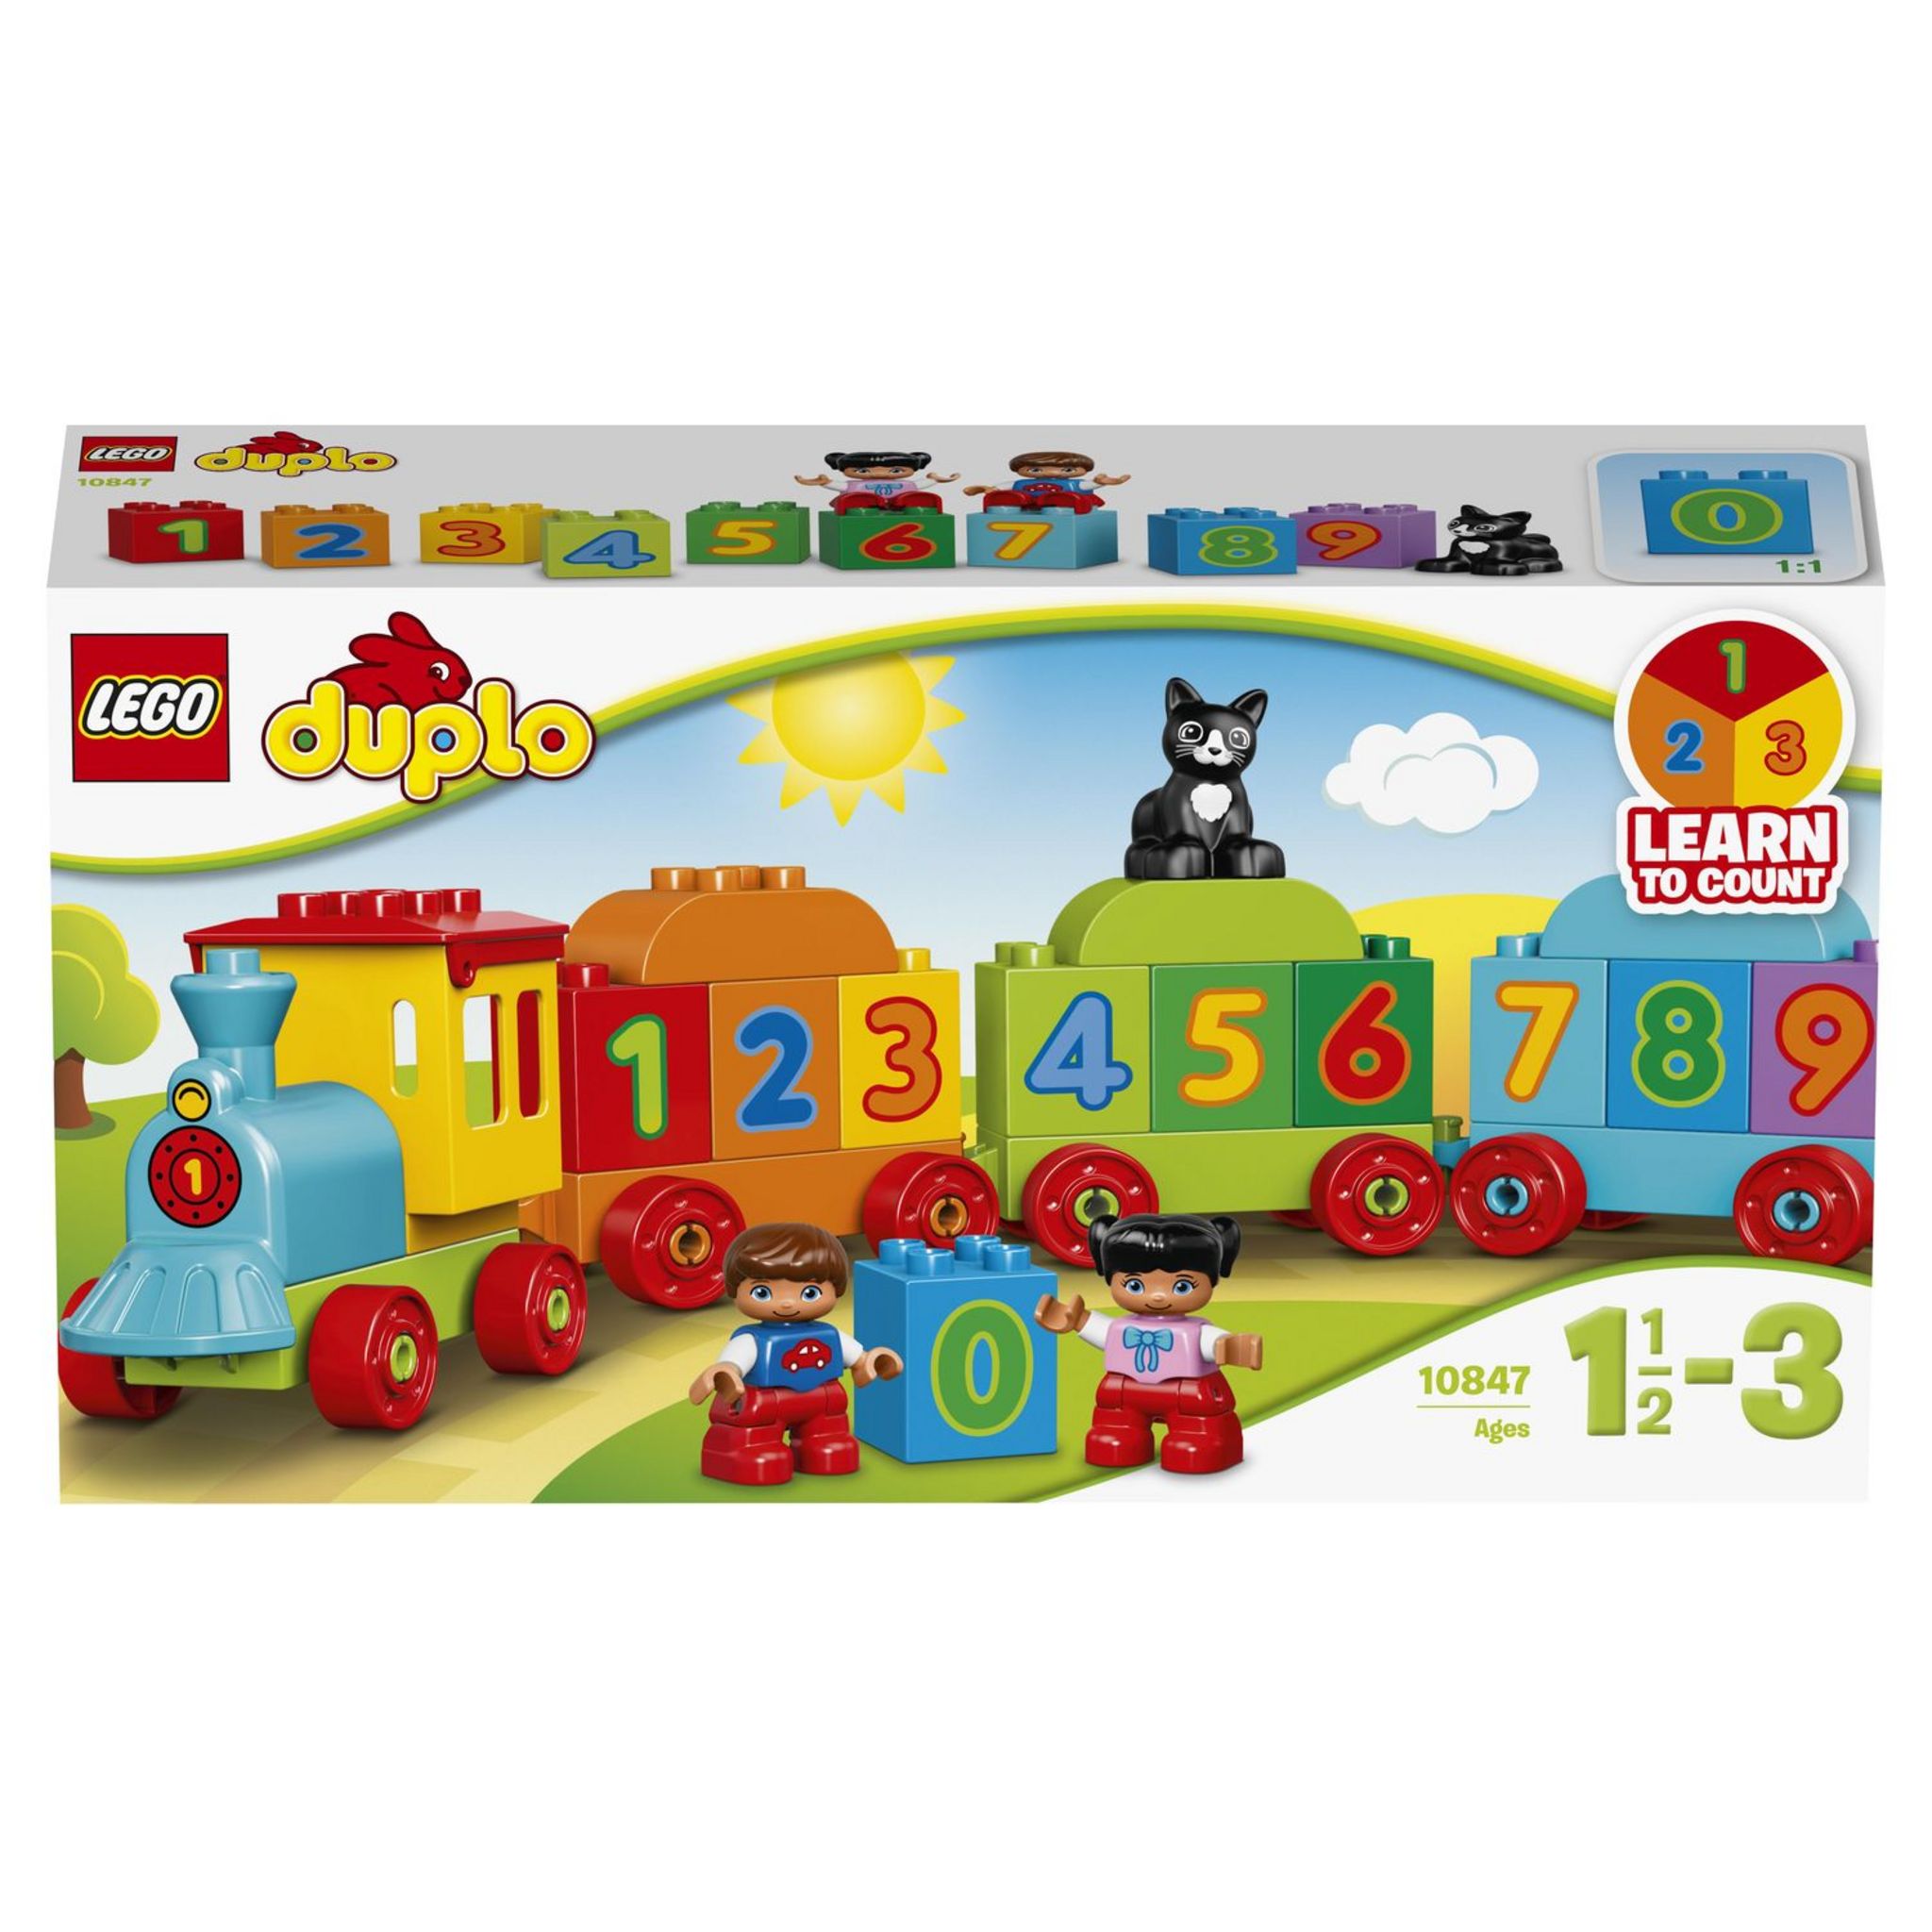 Agrarisch Ontwikkelen Tom Audreath LEGO DUPLO 10847 - Le train des chiffres pas cher - Auchan.fr